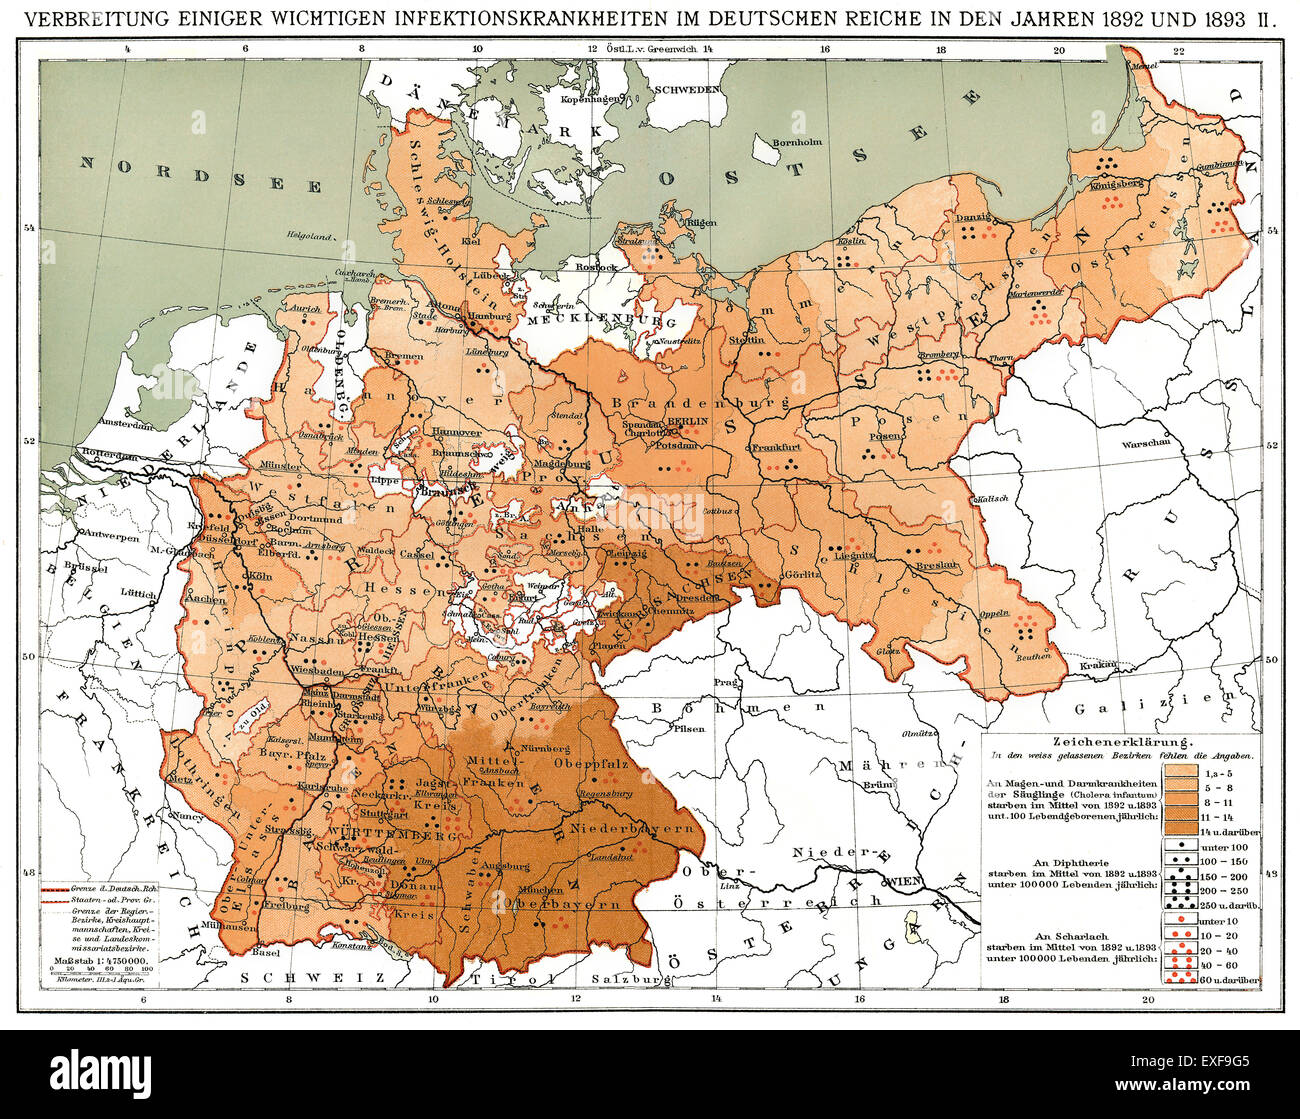 Mapa Histórico, la propagación de enfermedades infecciosas en el Imperio Alemán en 1892 y 1893 Foto de stock